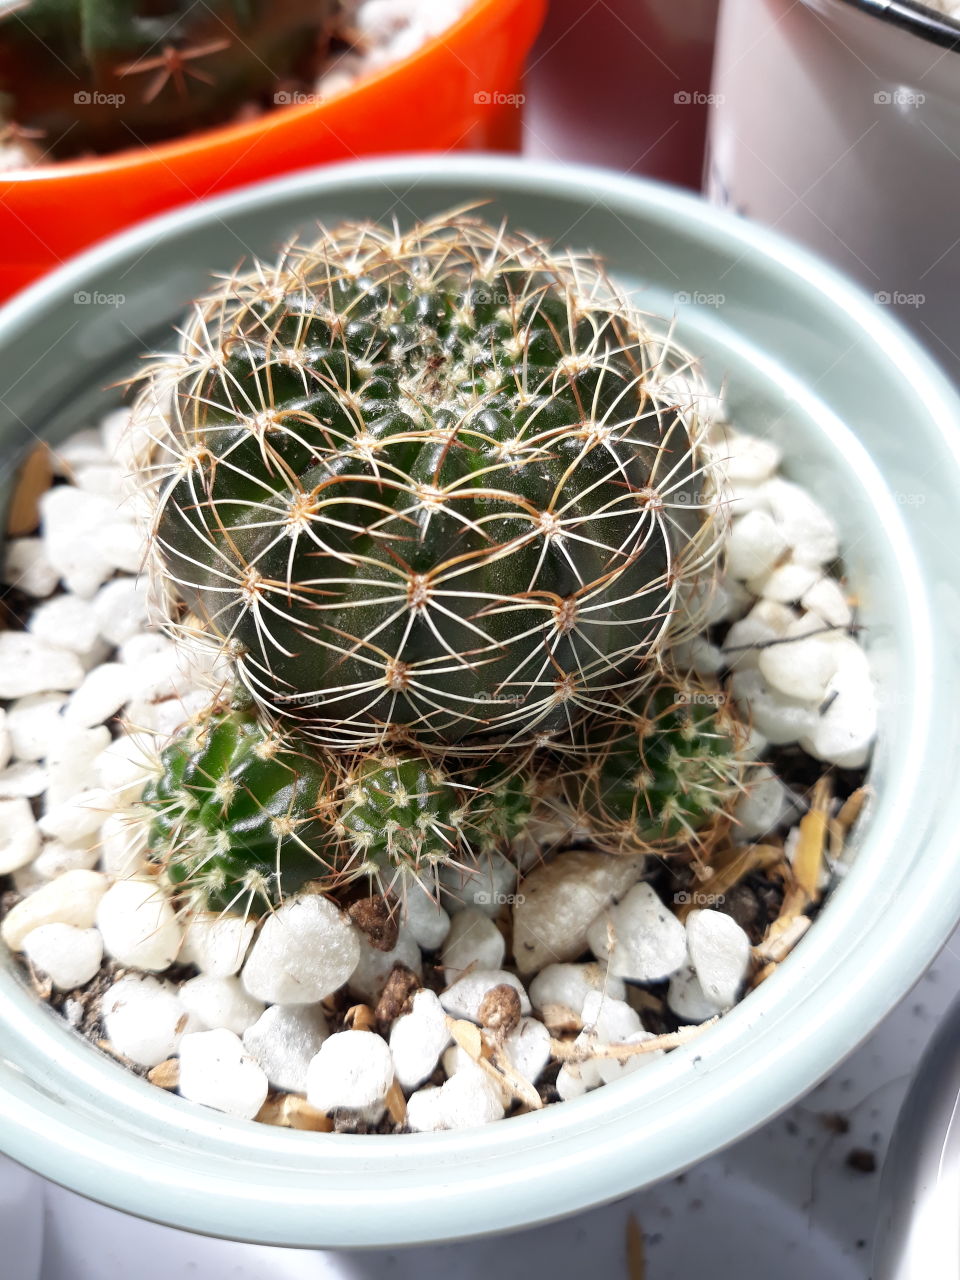 Cactus babies